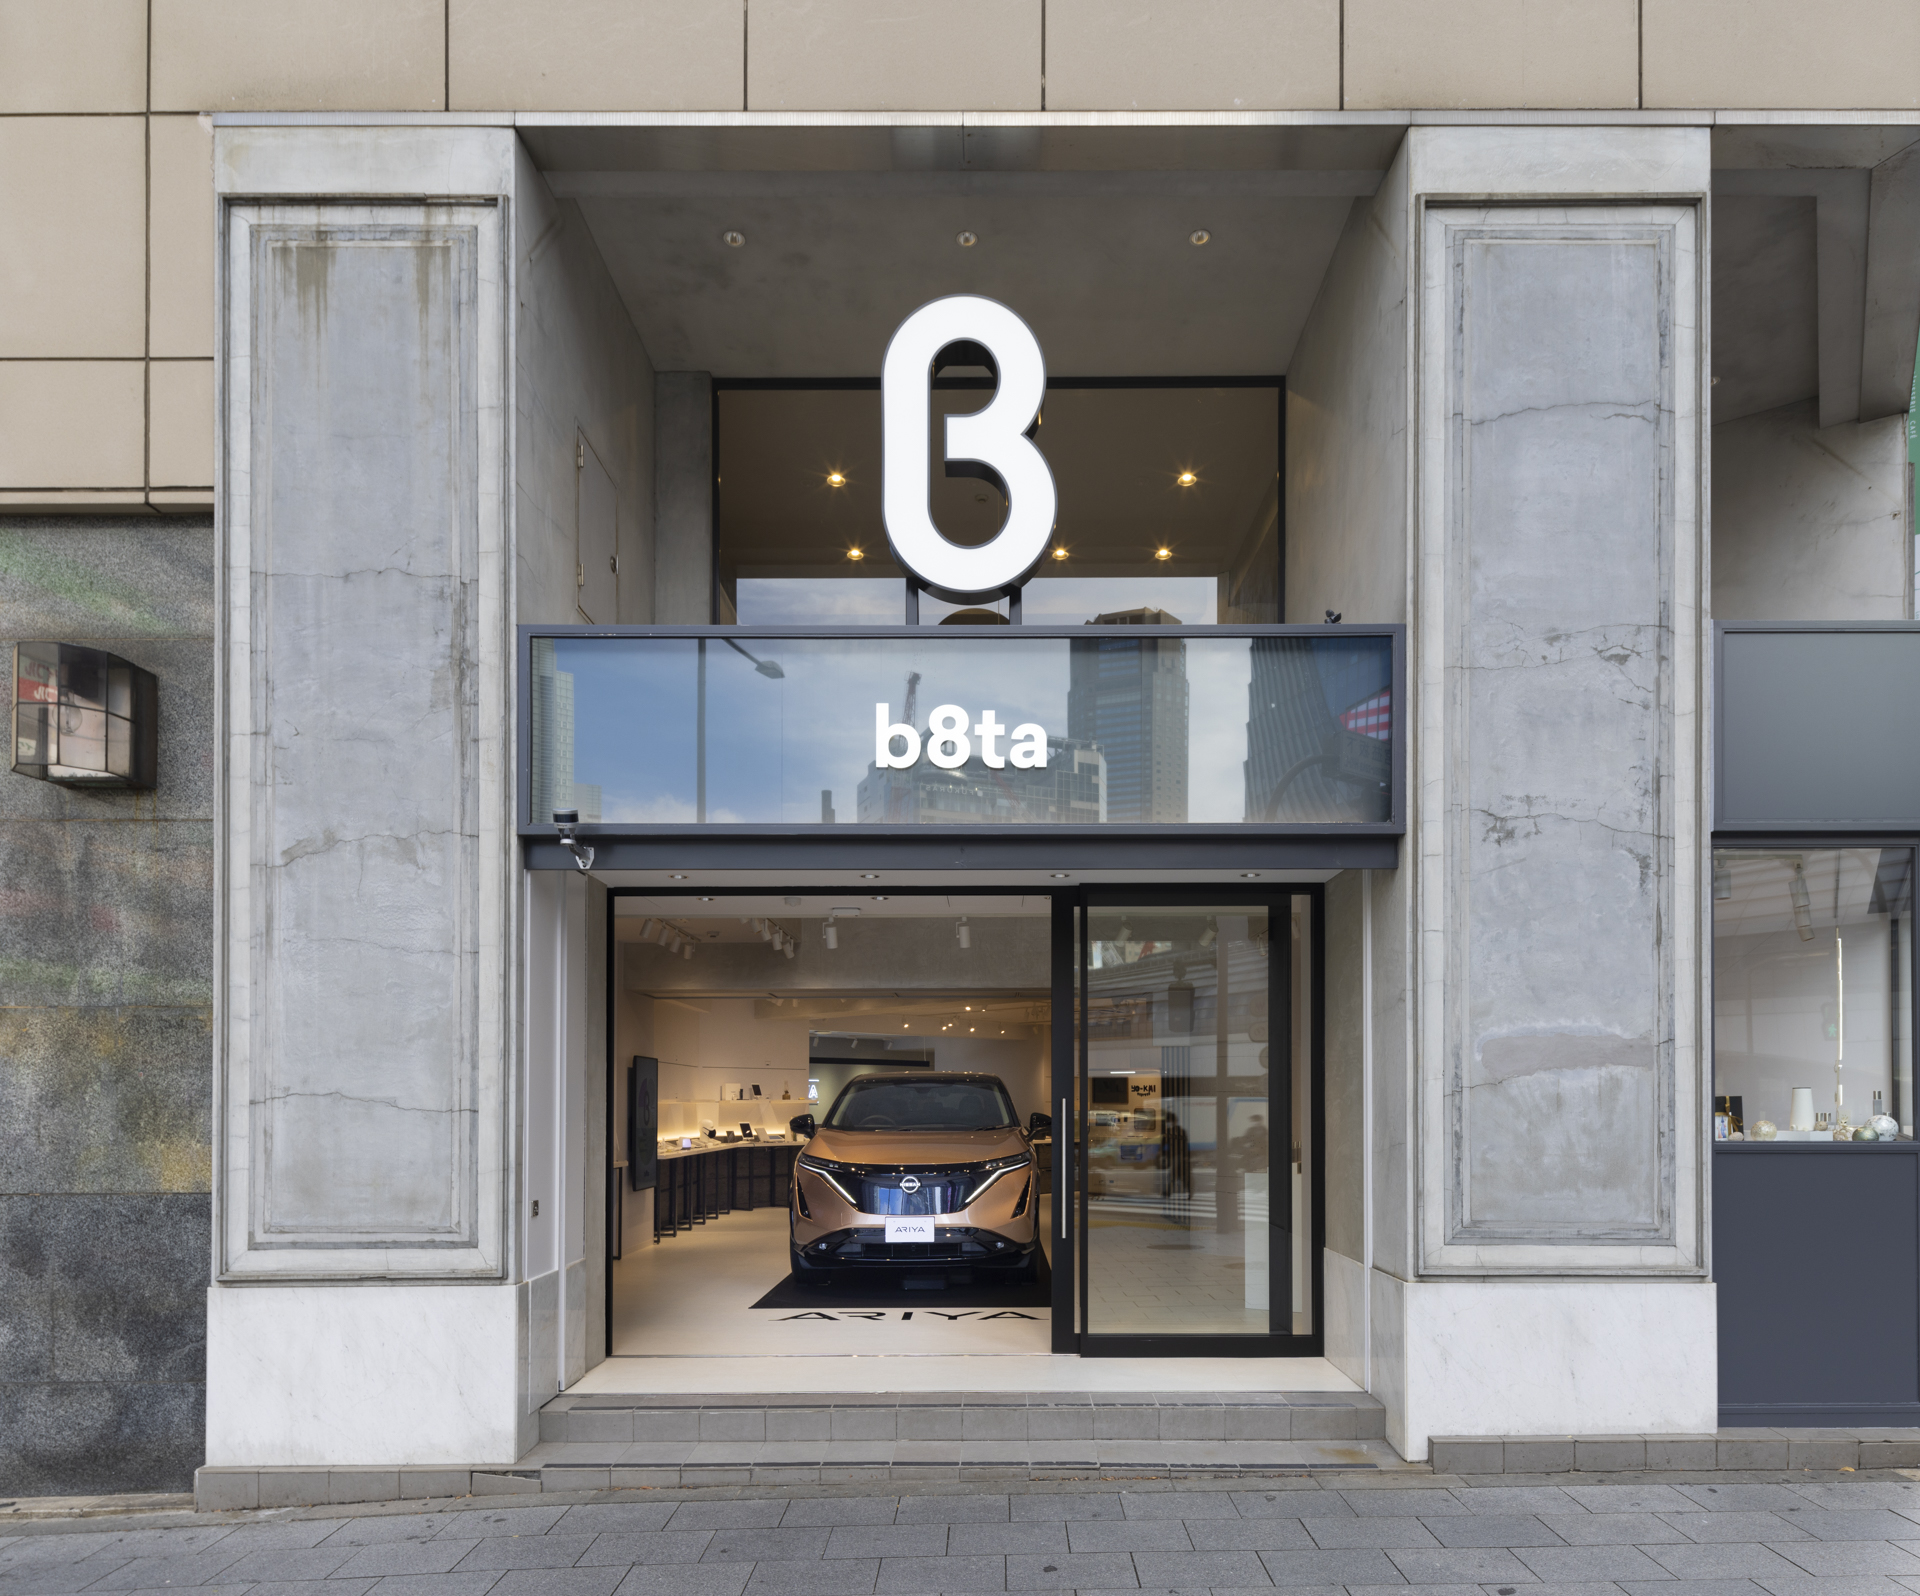 “売らない小売”の体験型ストア、b8taが新店舗「b8ta Tokyo - Shibuya」を渋谷にオープン、内部を公開